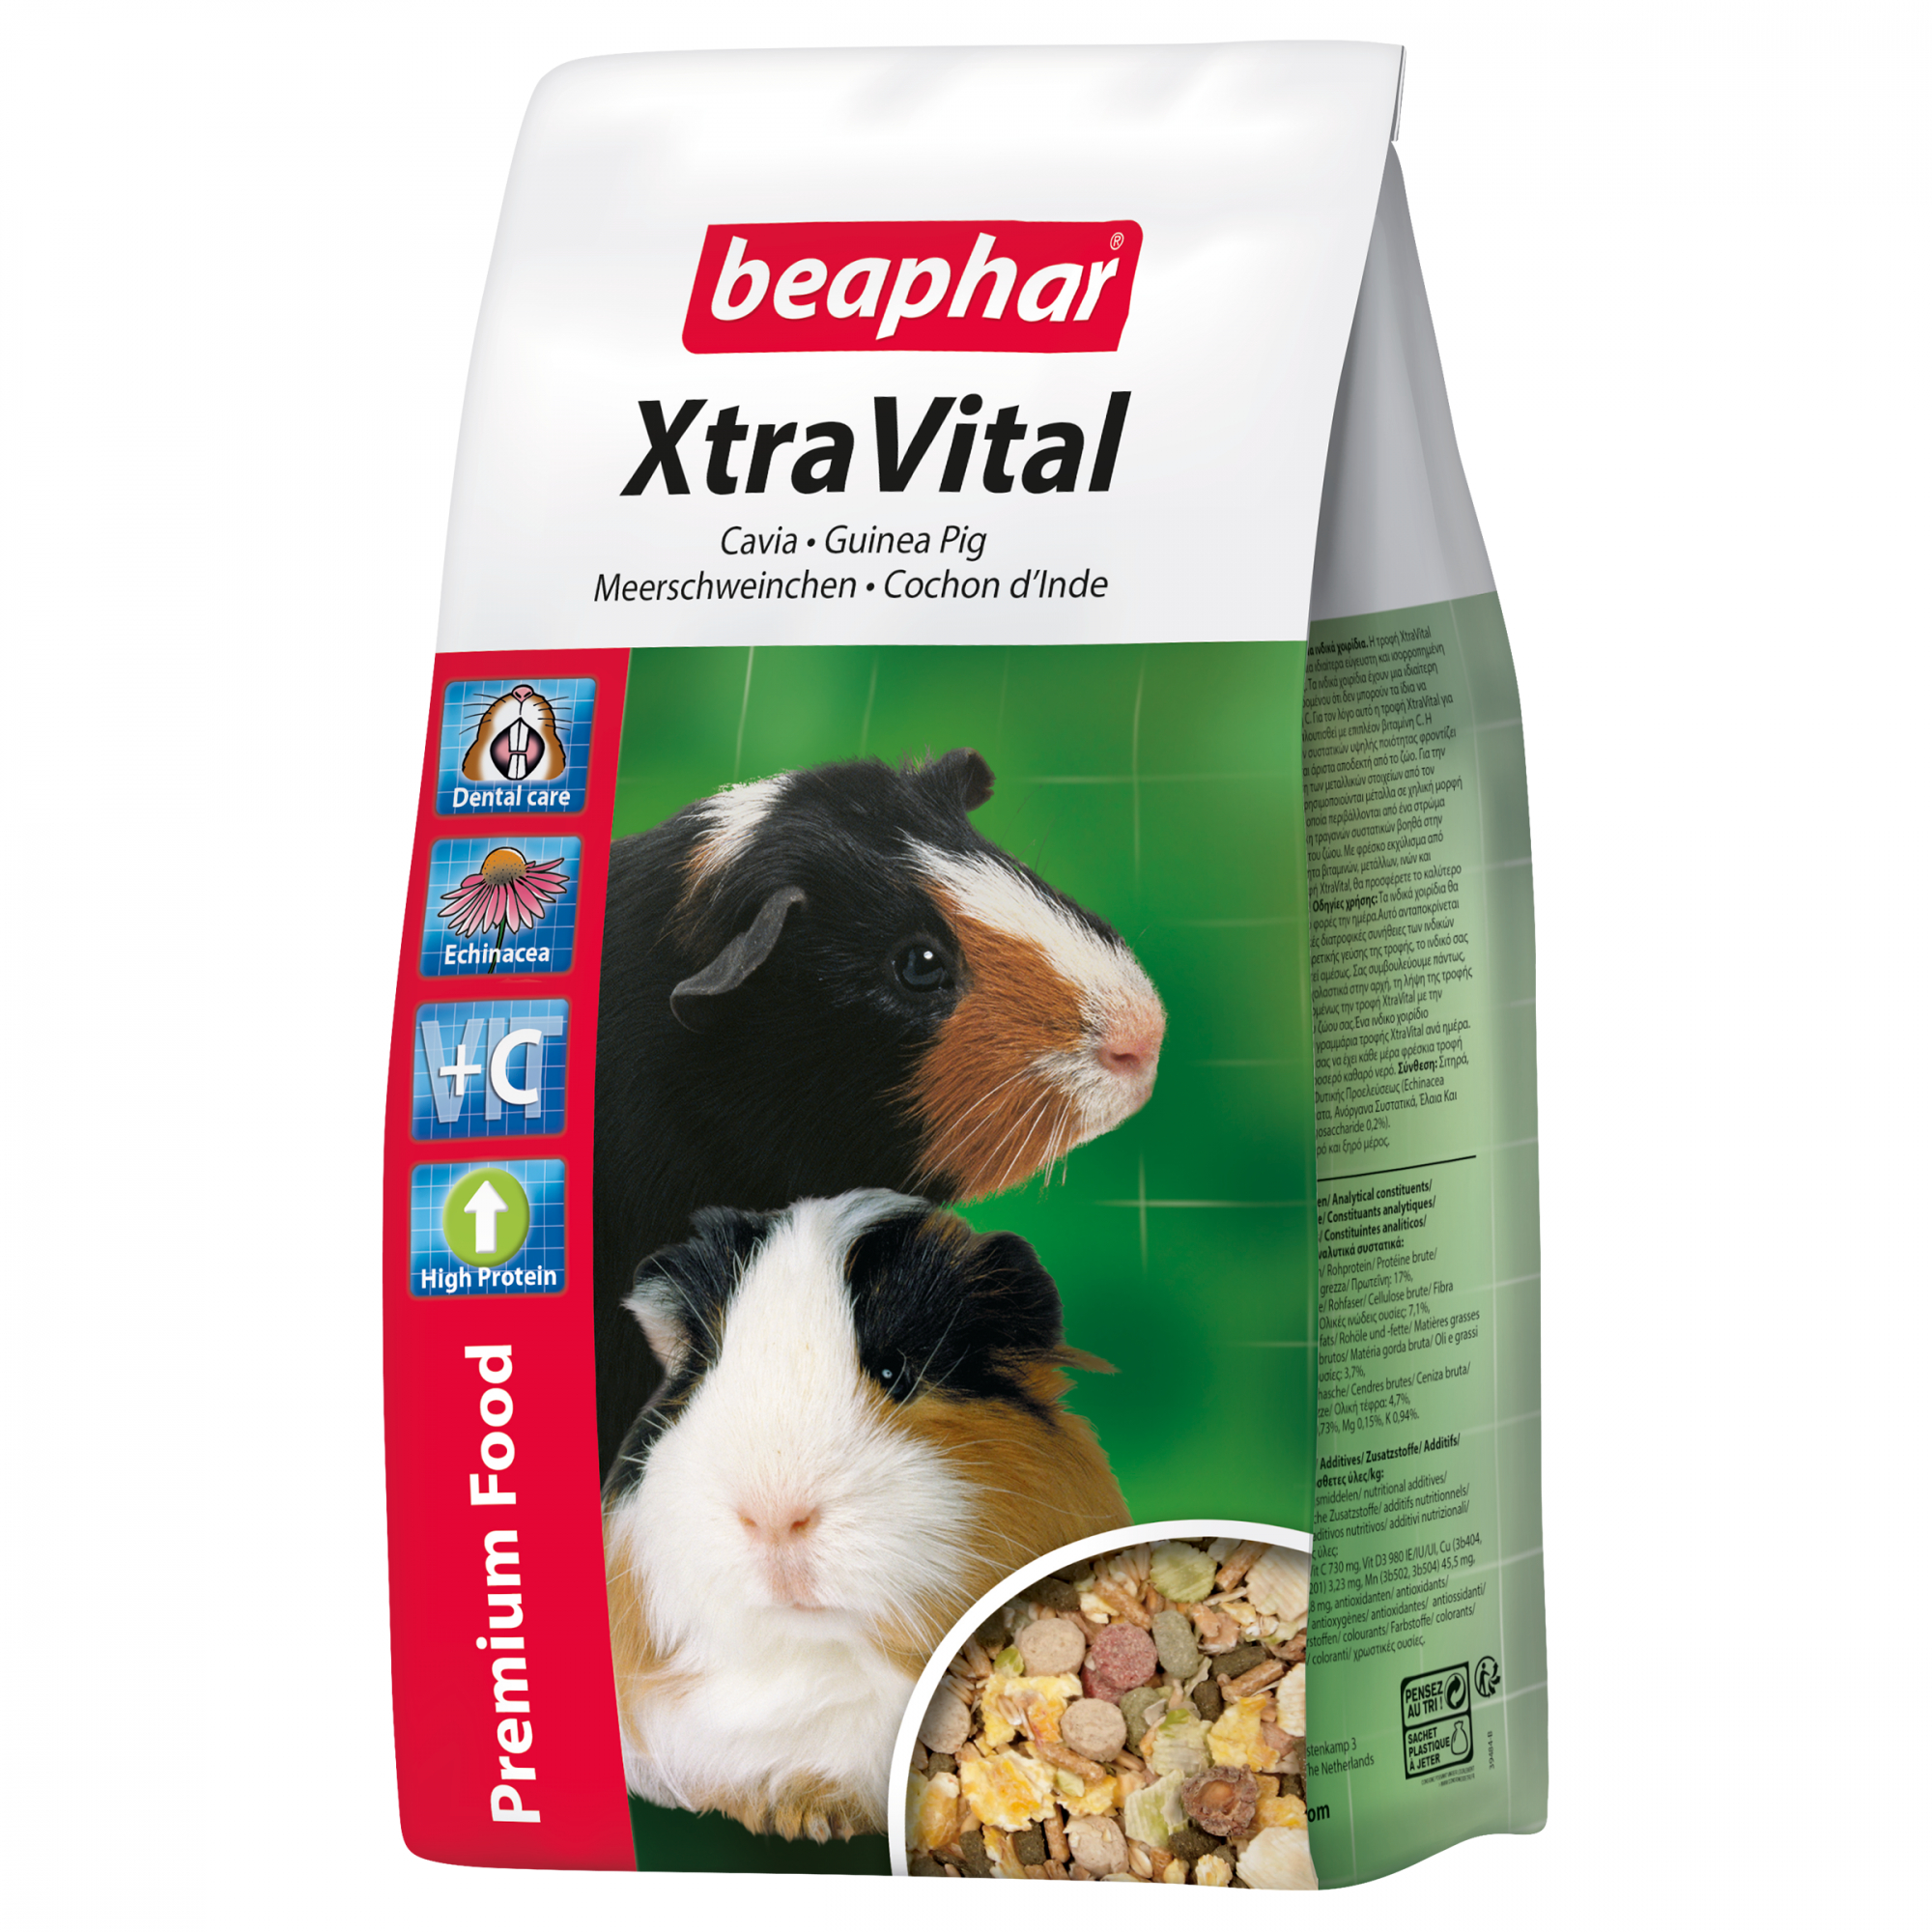 XtraVital, Premium Futter für Meerschweinchen